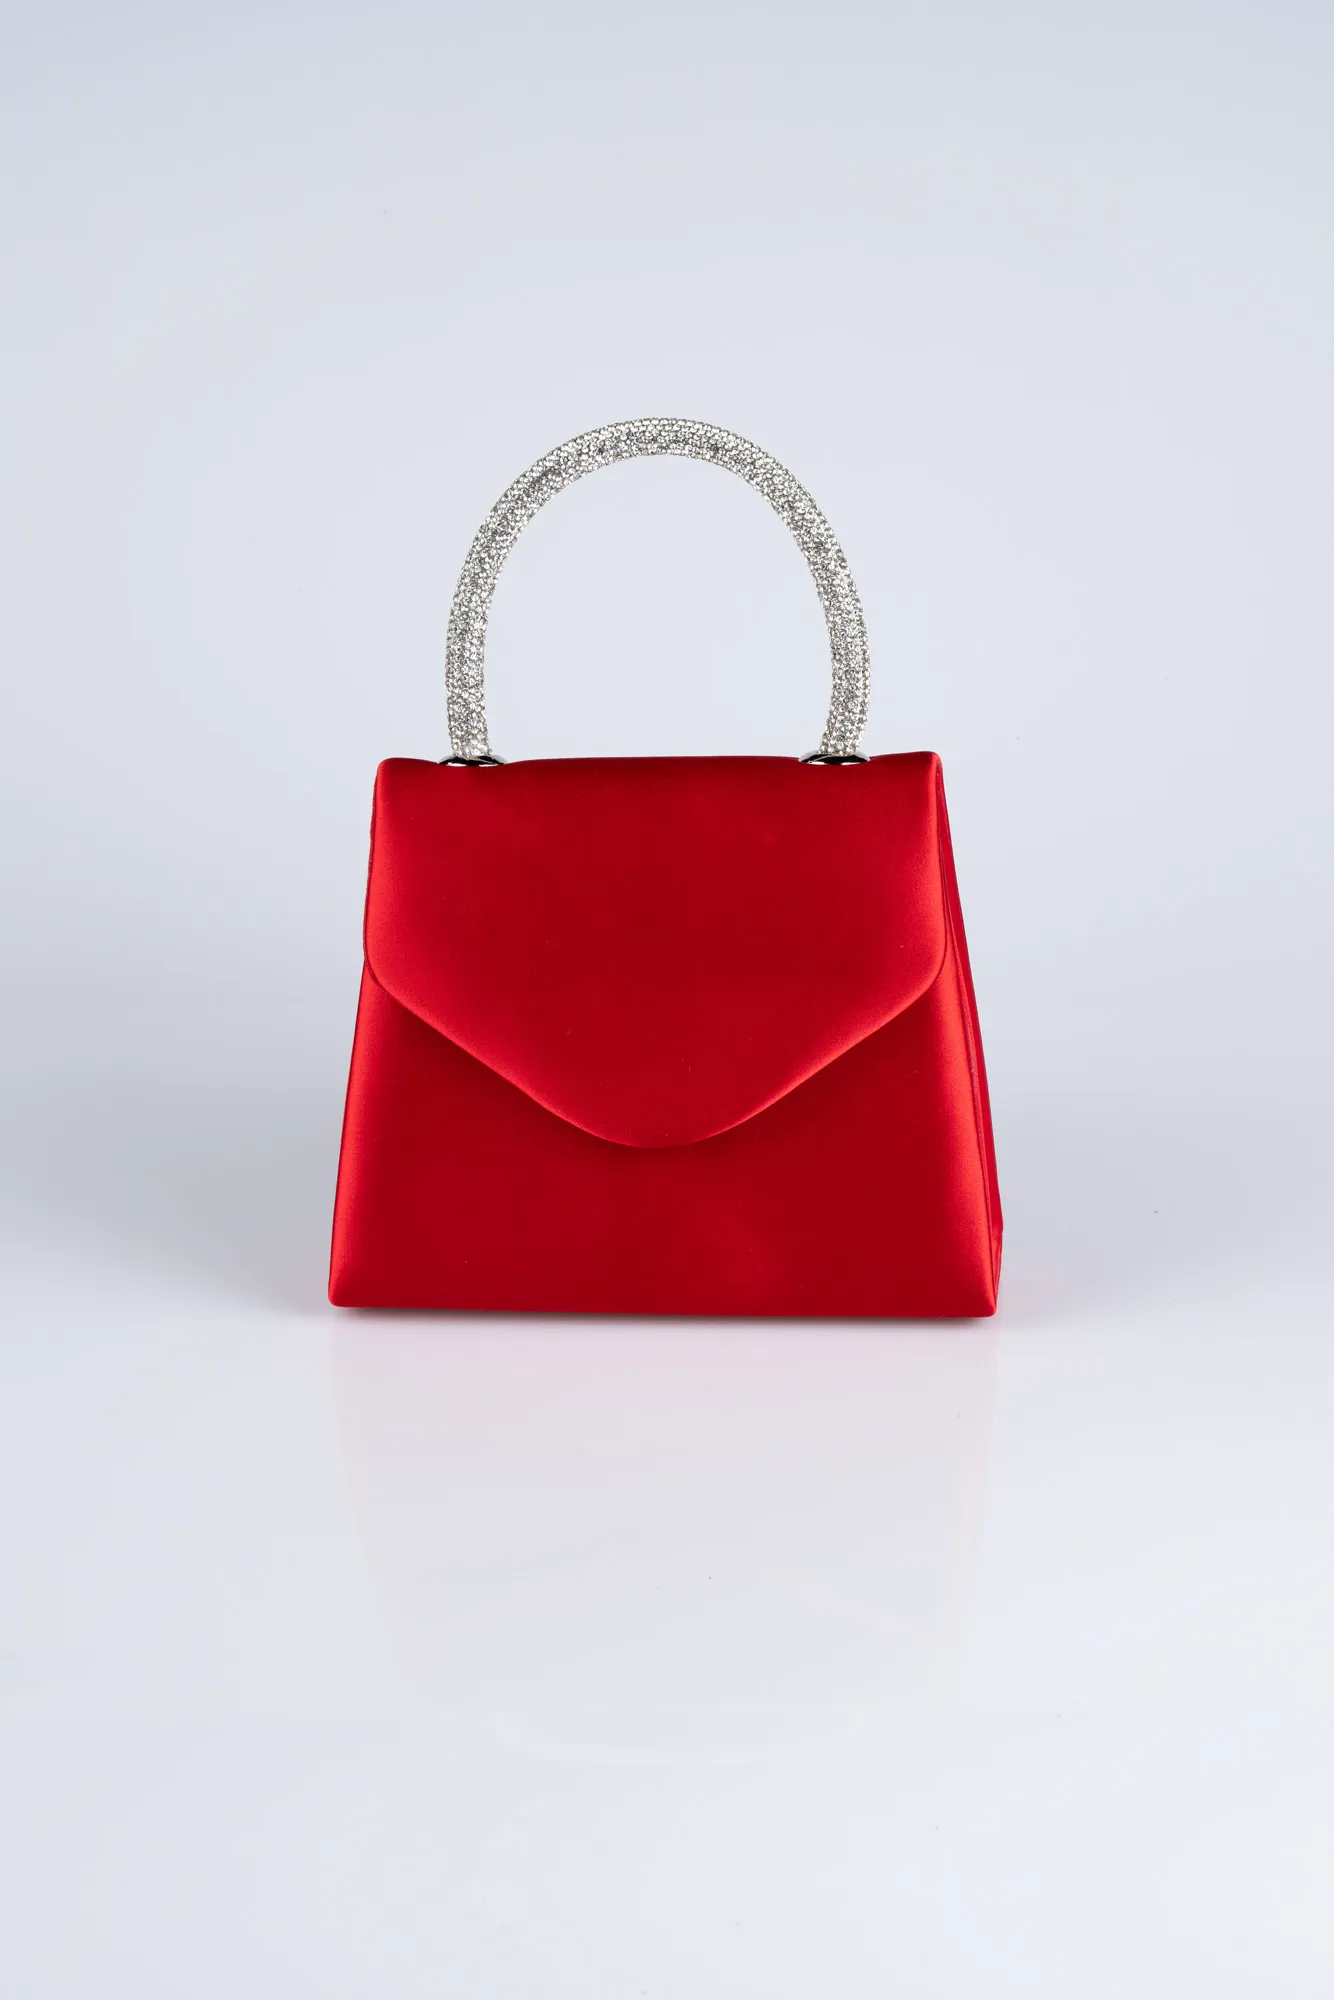 Red-Satin Box Bag V436